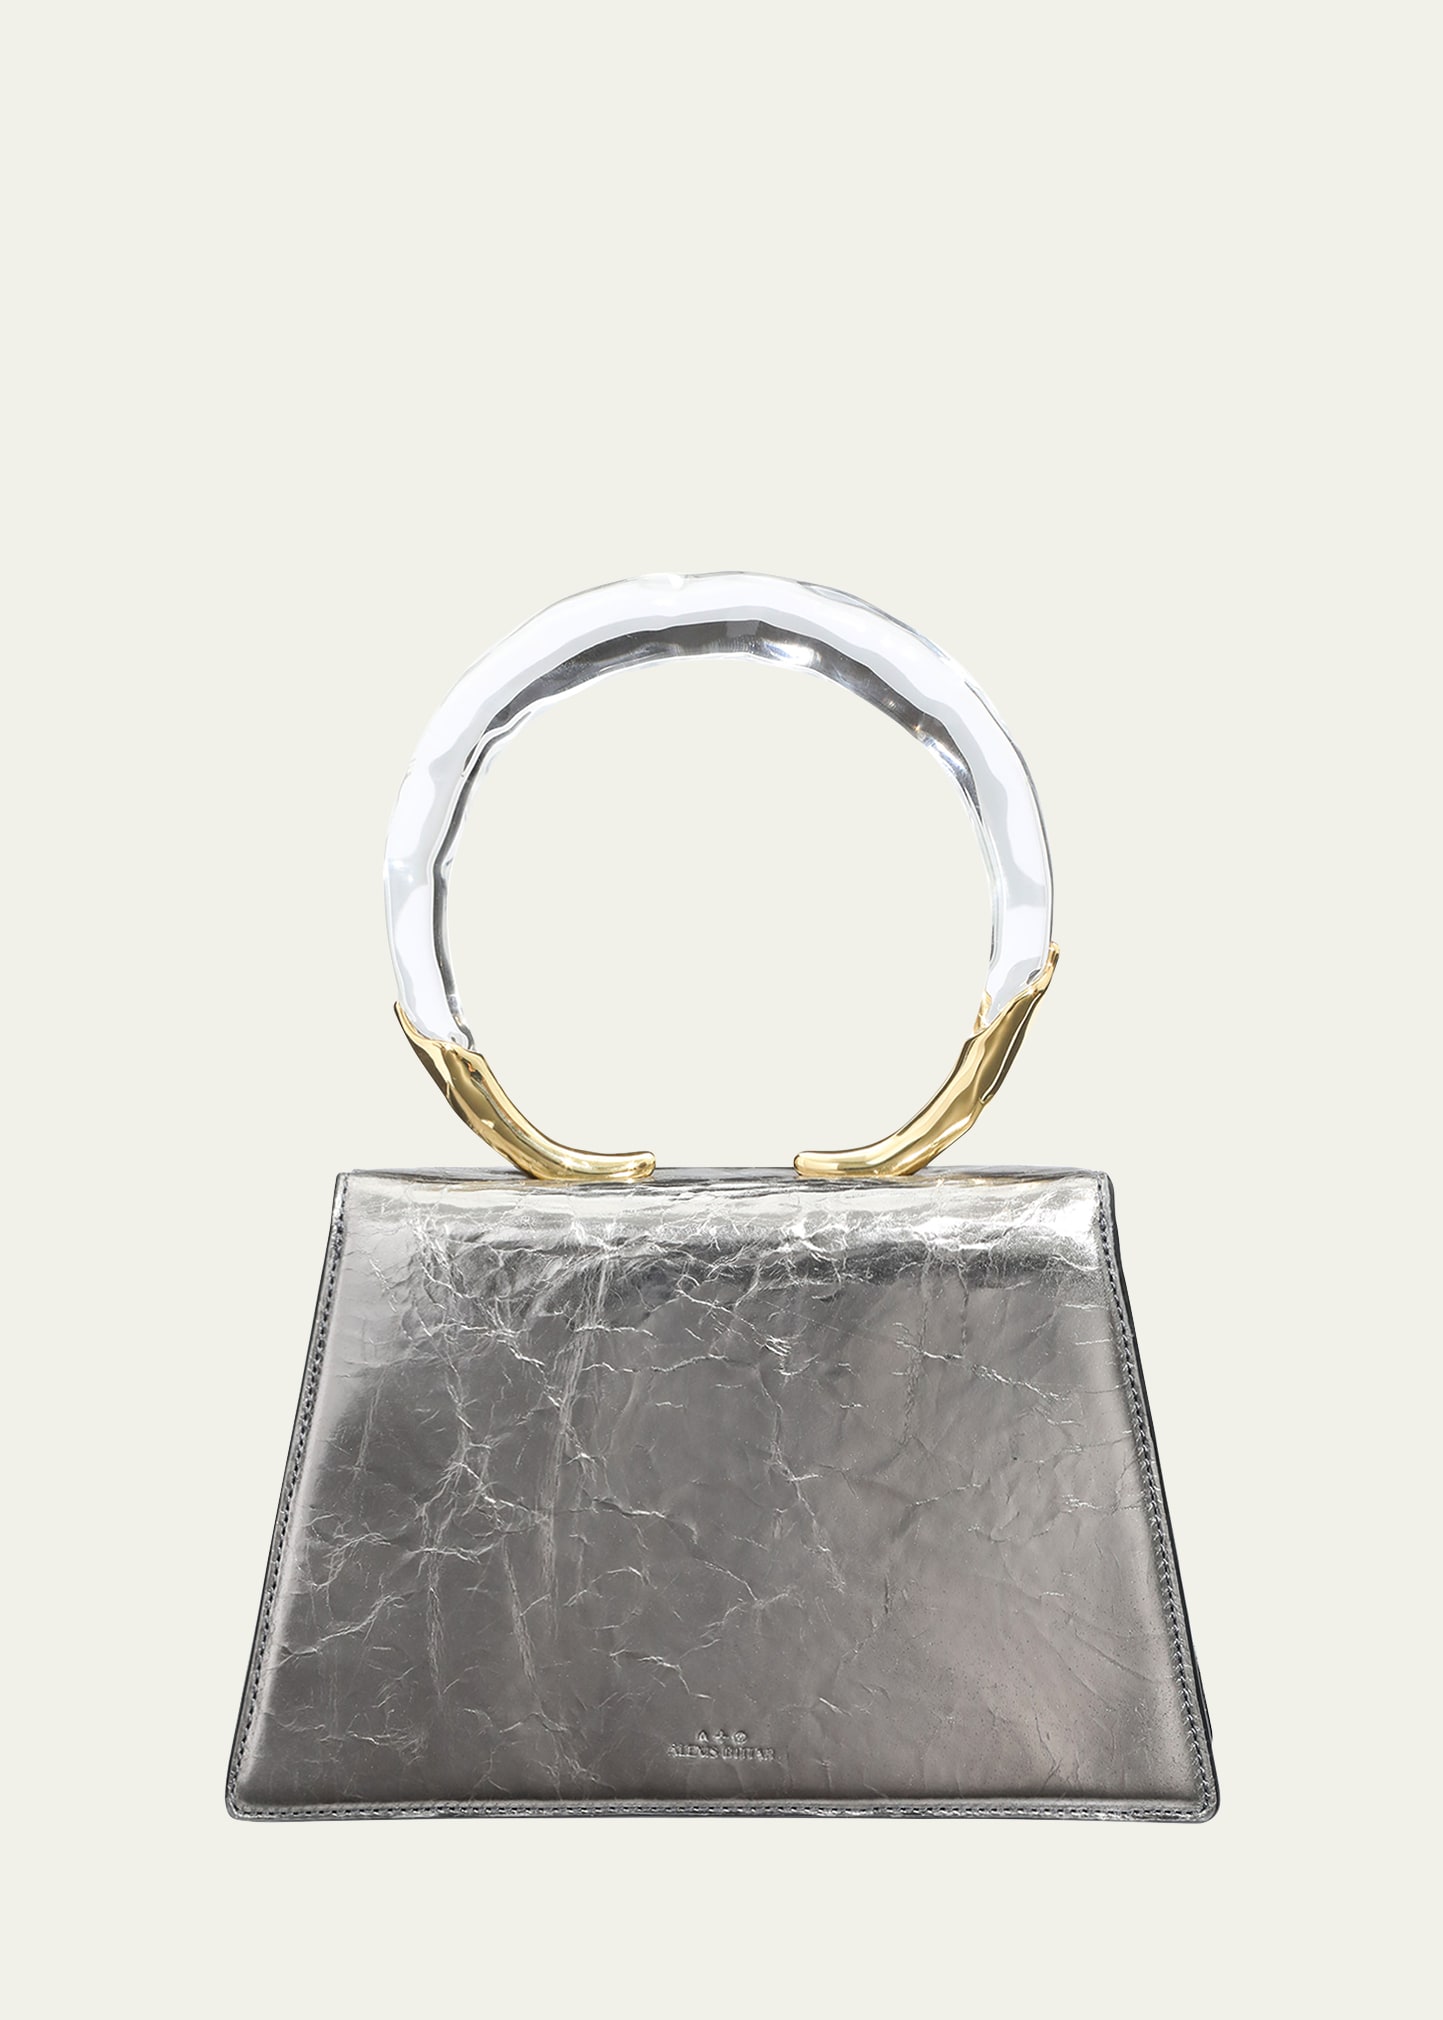 Alexis Bittar Lucite Quad Metallic Leather Small Handbag In Pewter